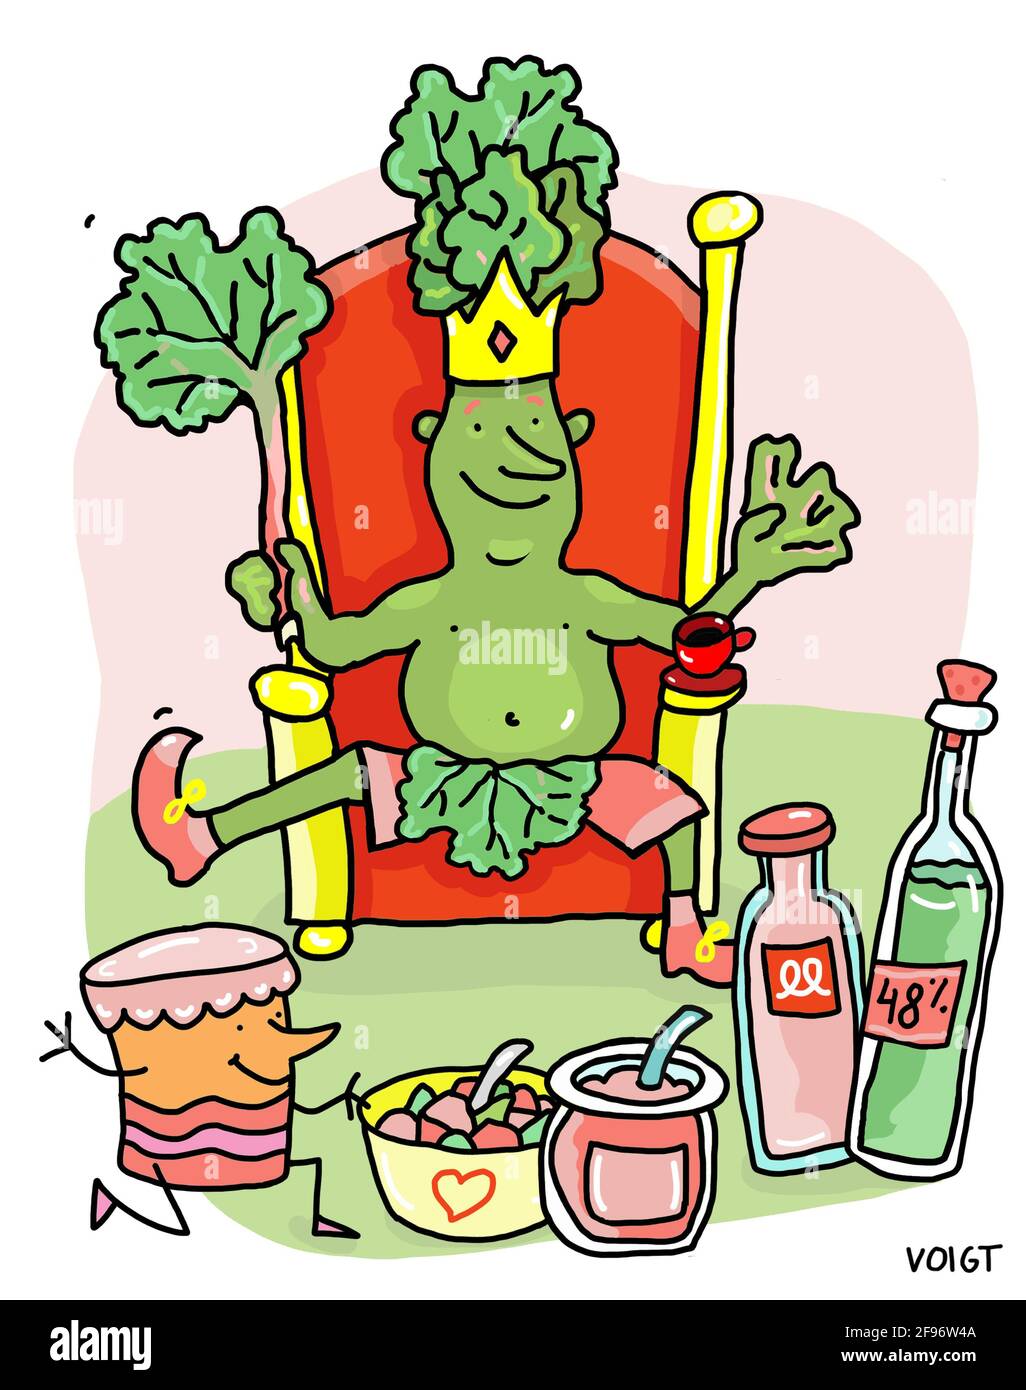 Illustration, Cartoon, König Rhubarb sitzt auf seinem Thron und ist begeistert von all dem guten Essen, das von ihm gemacht wurde. Stockfoto